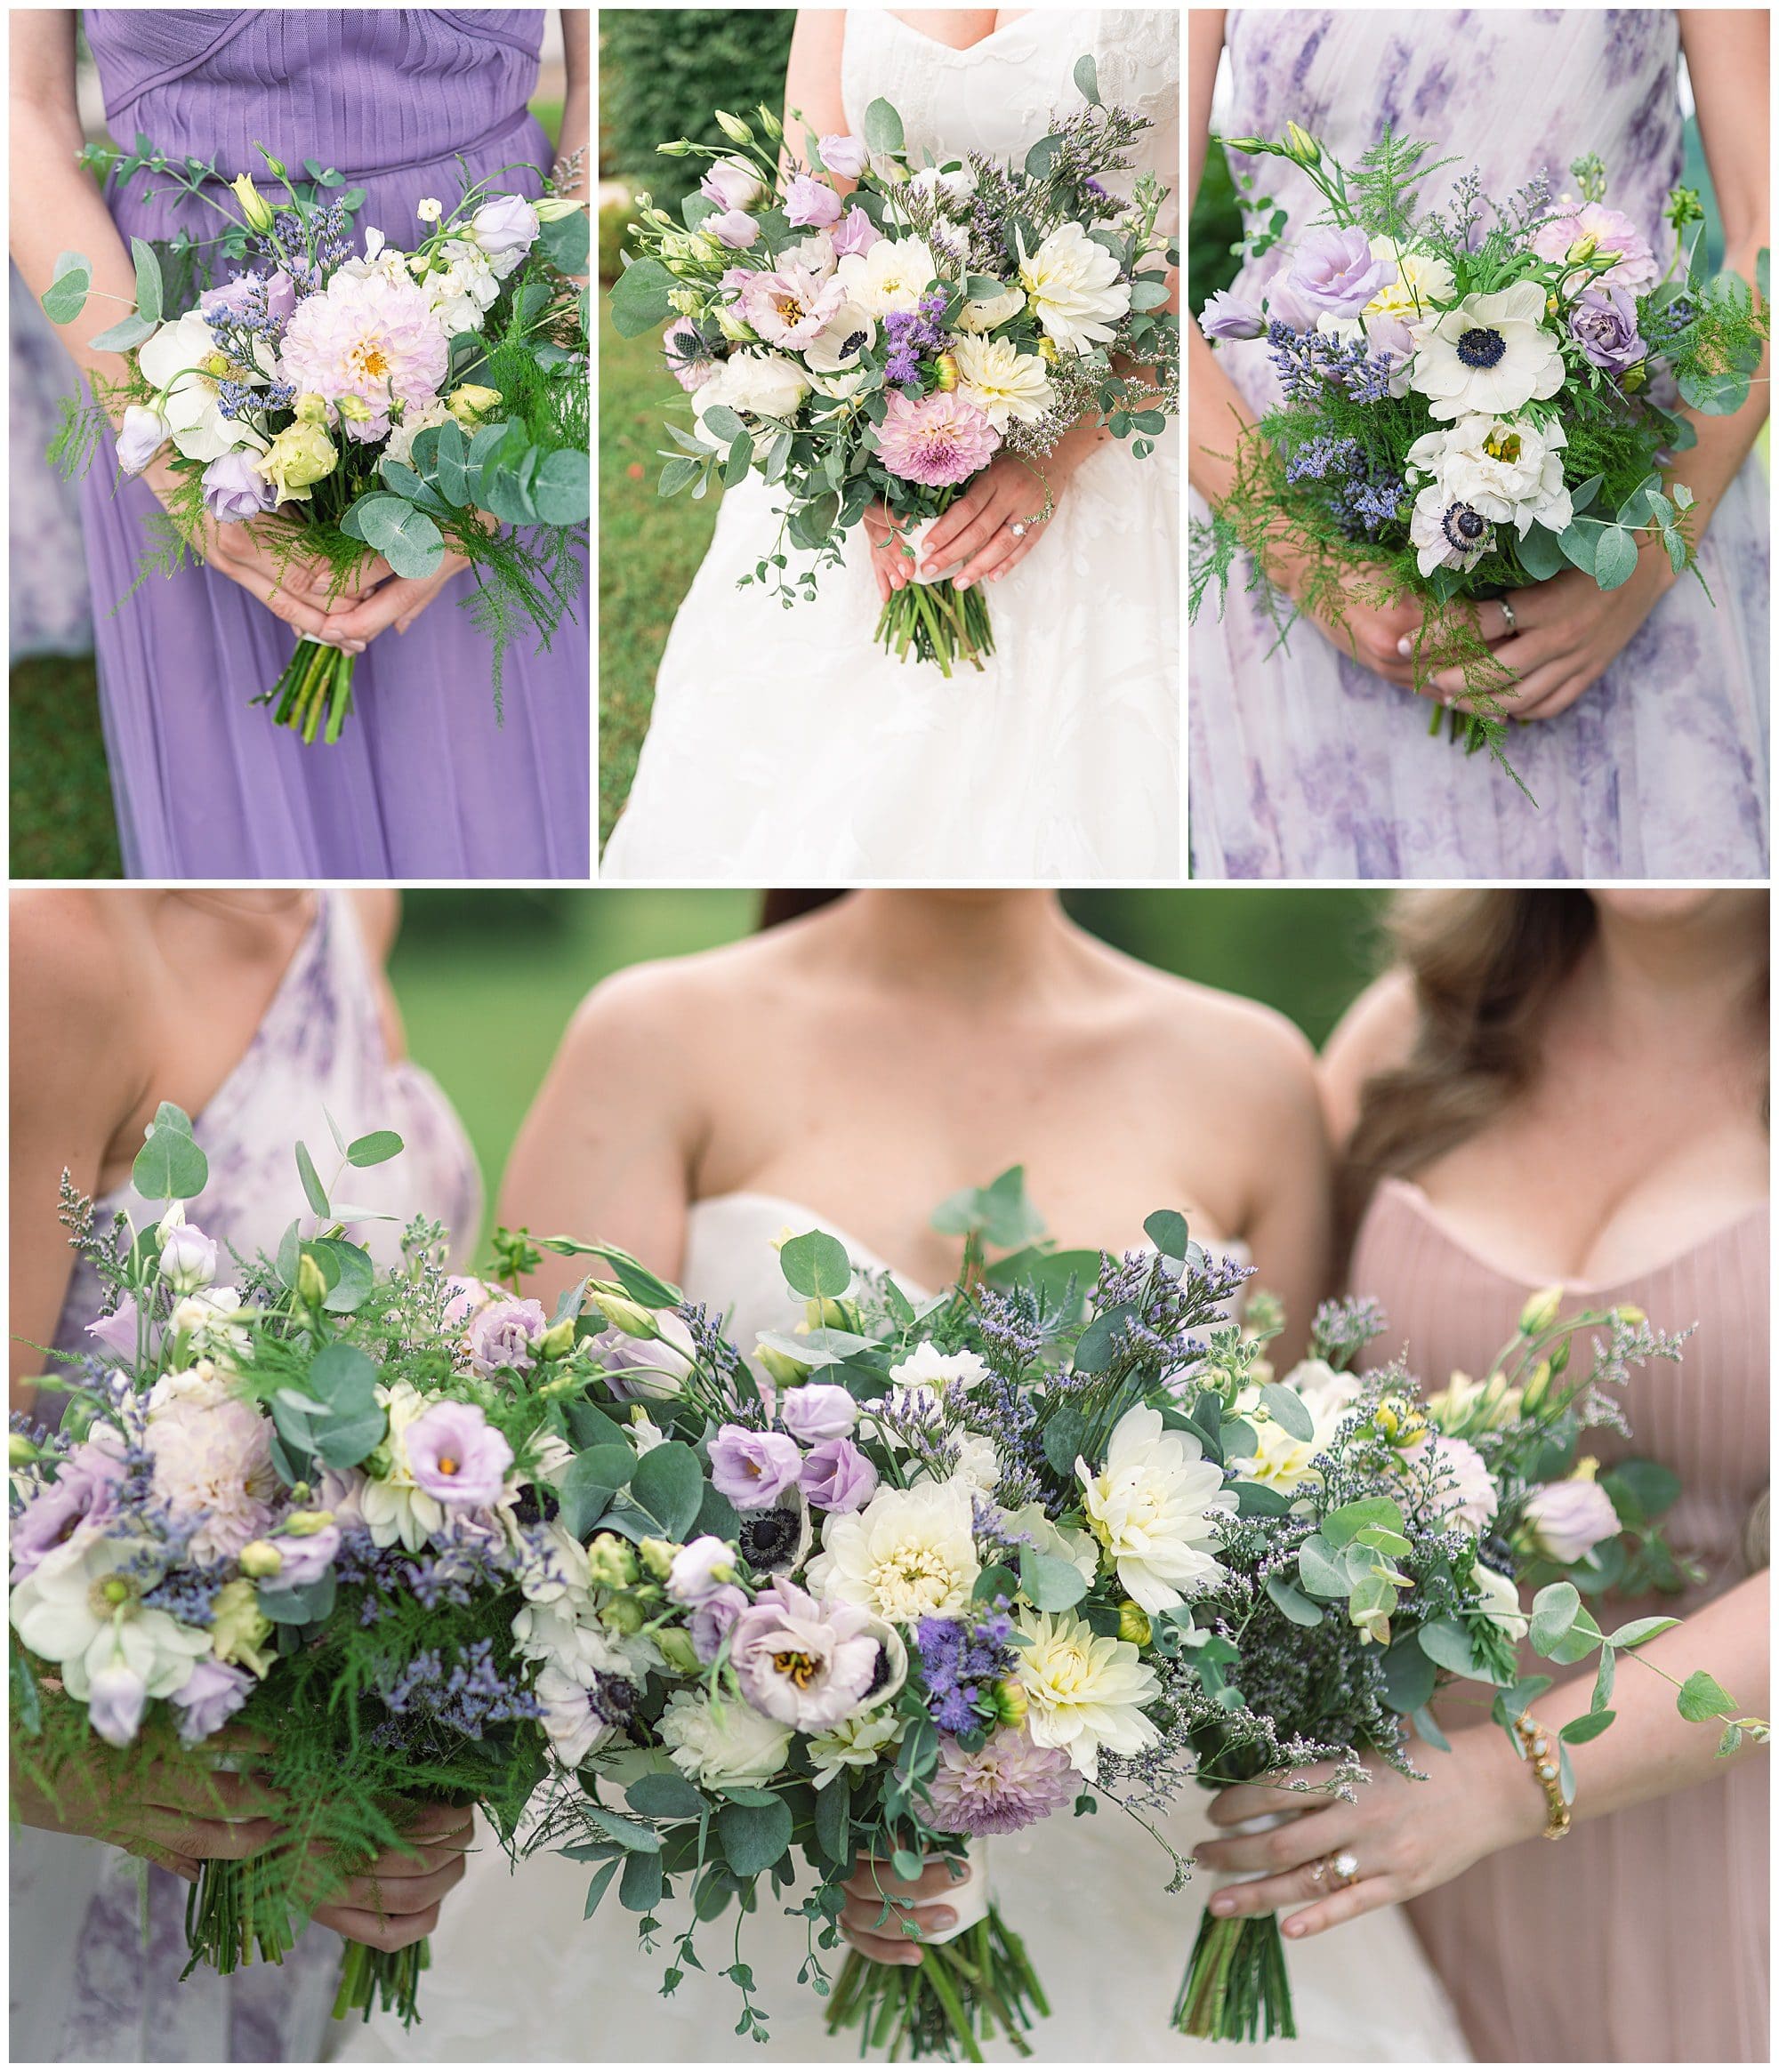 Close up photos of bride & bridesmaids bouquets